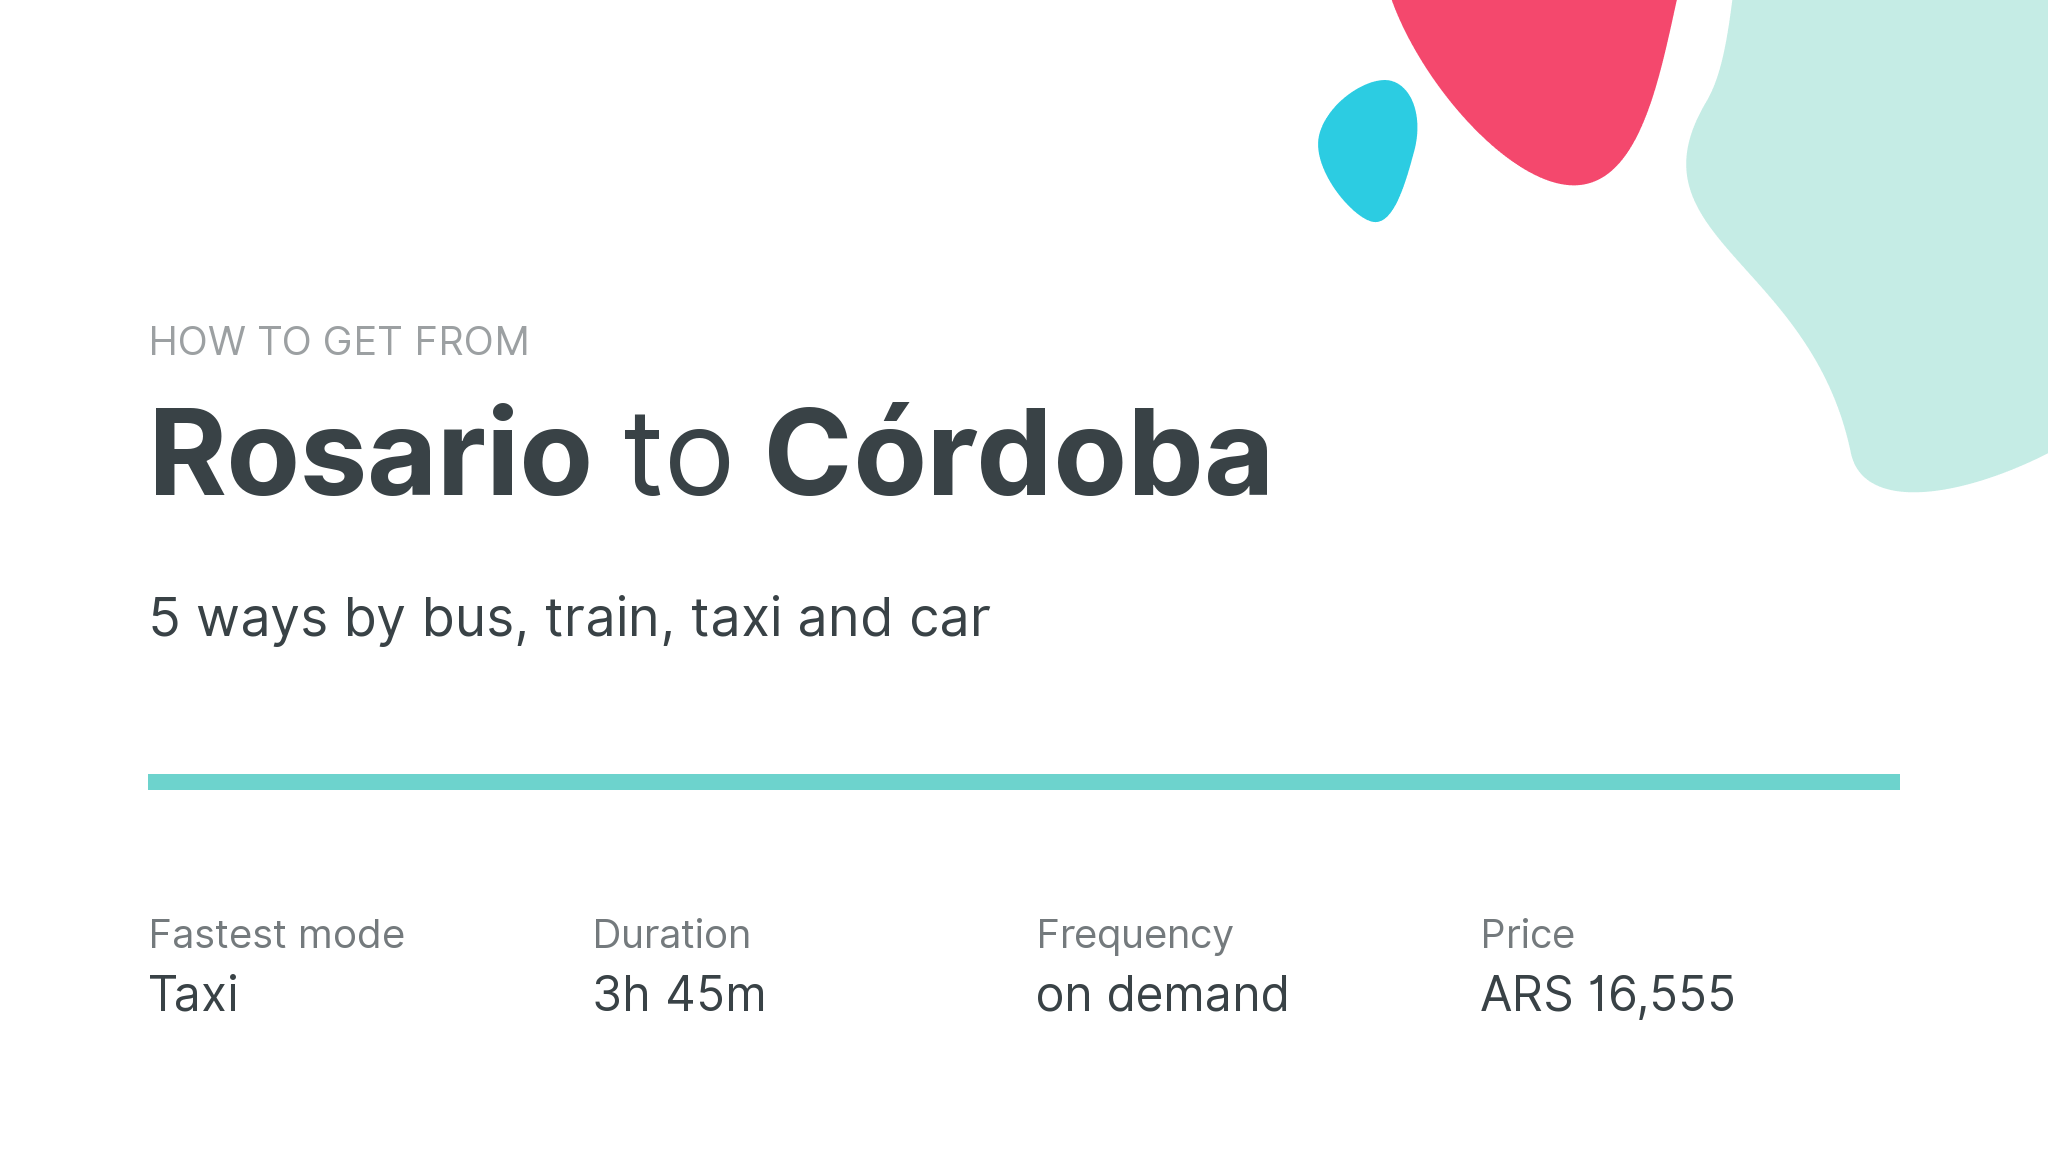 How do I get from Rosario to Córdoba